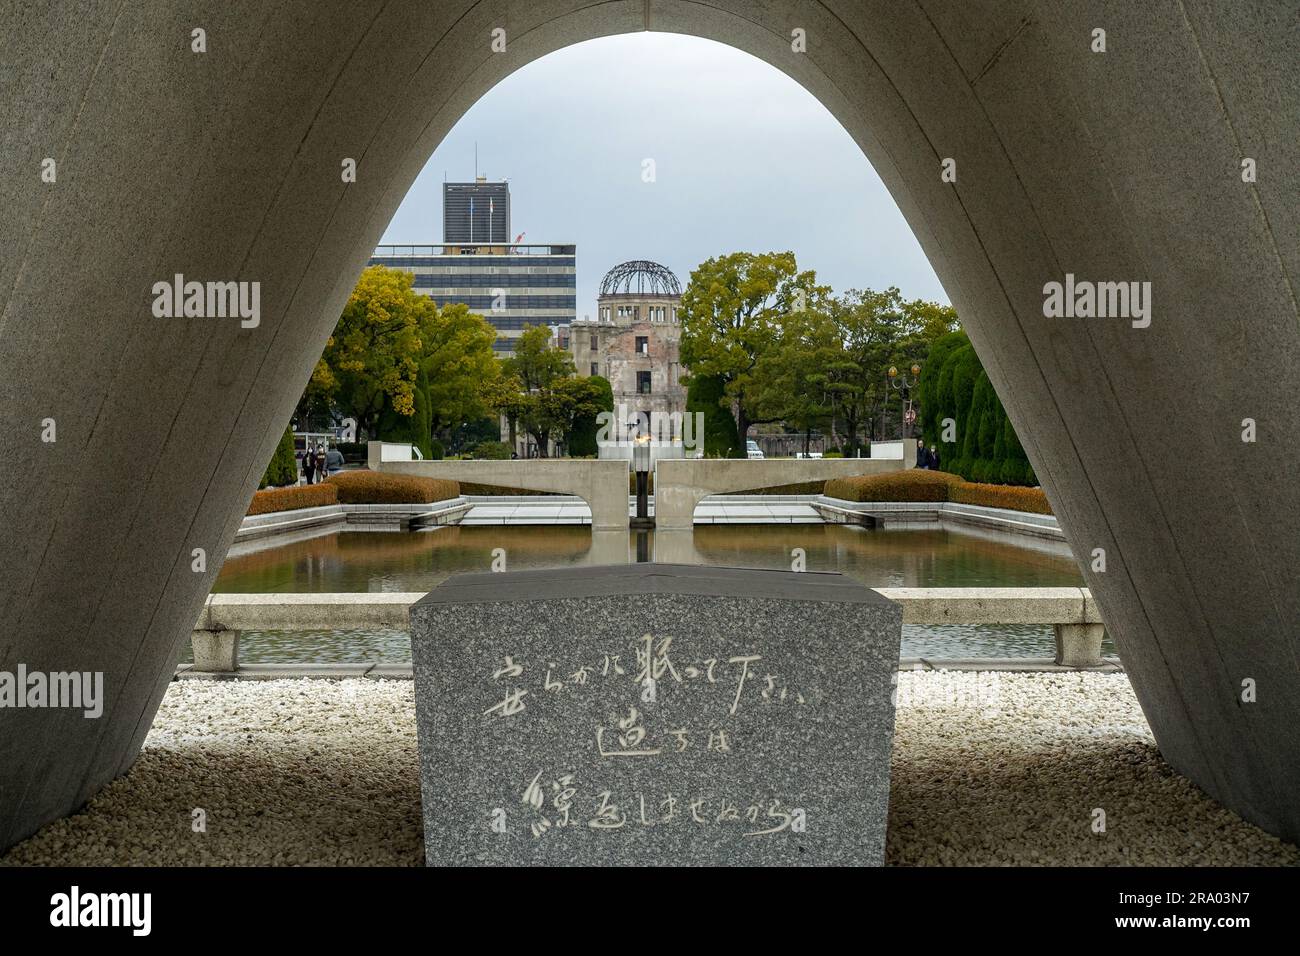 Le cénotaphe commémoratif des victimes d'Hiroshima au Parc commémoratif de la paix d'Hiroshima, au Japon, avec la ruine du dôme de la bombe A. Banque D'Images